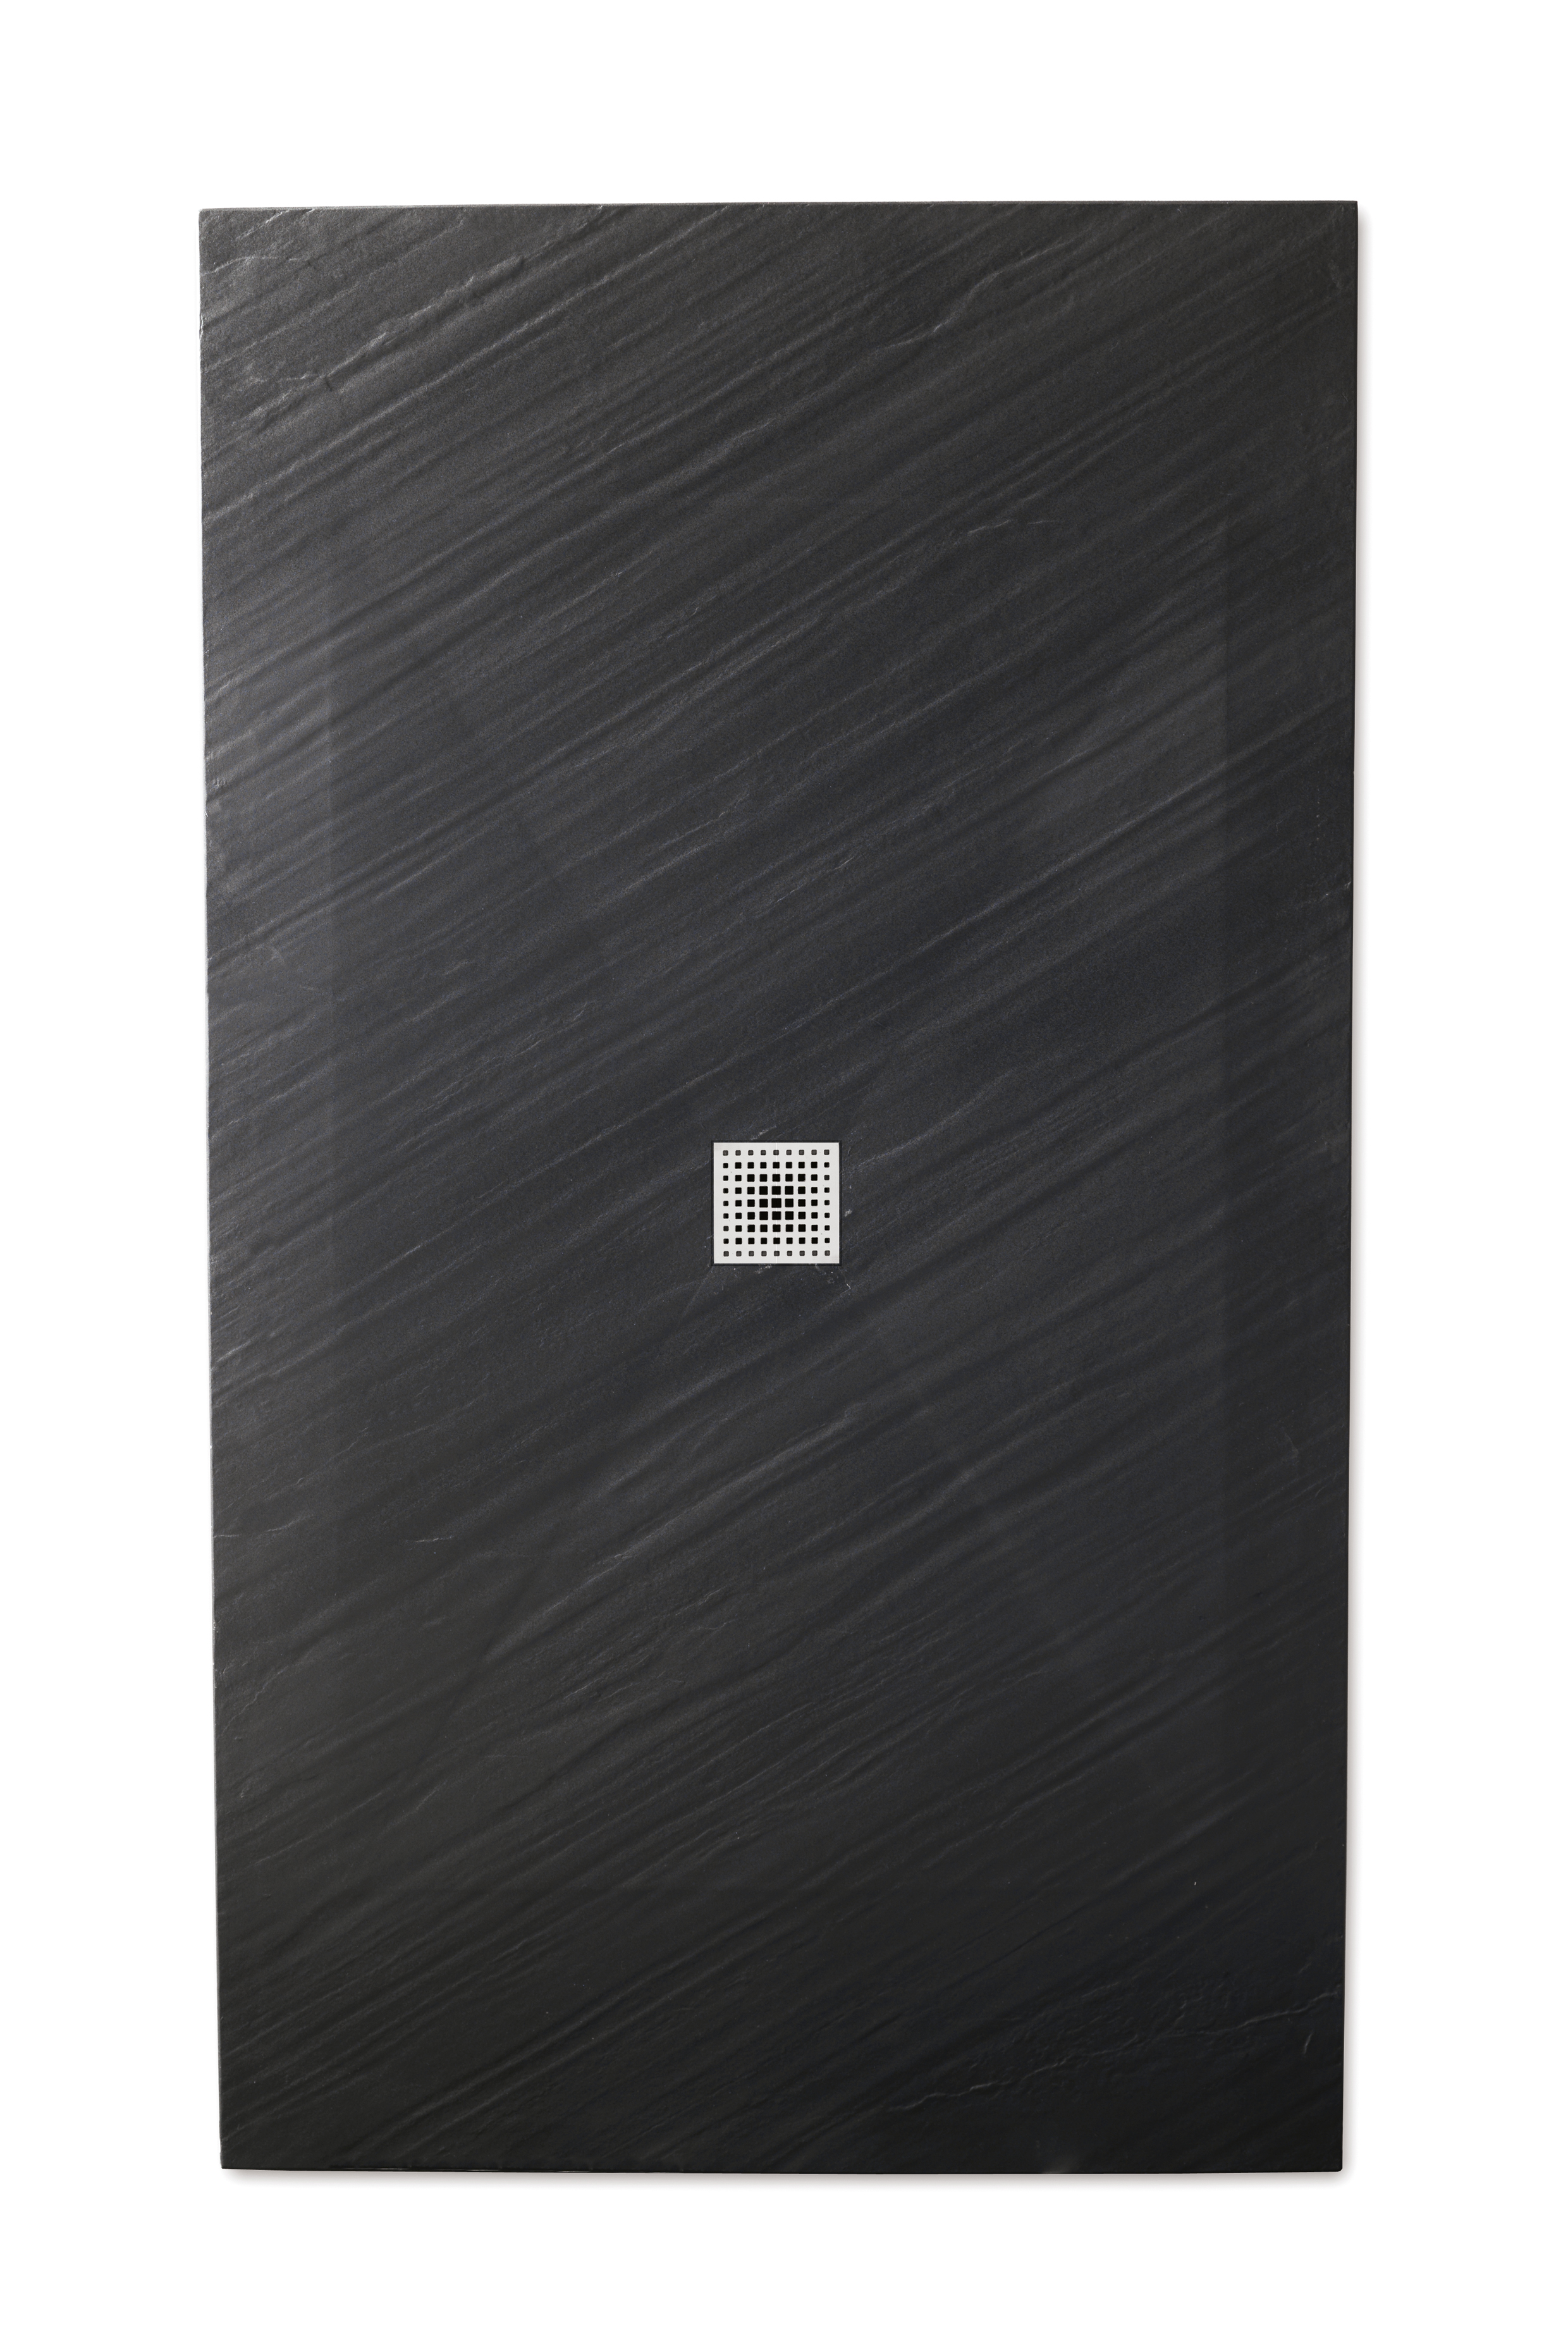 PIANA piatto doccia ultra flat 3 cm in Mineralstone 80x160 finitura nero - Bagno Italiano